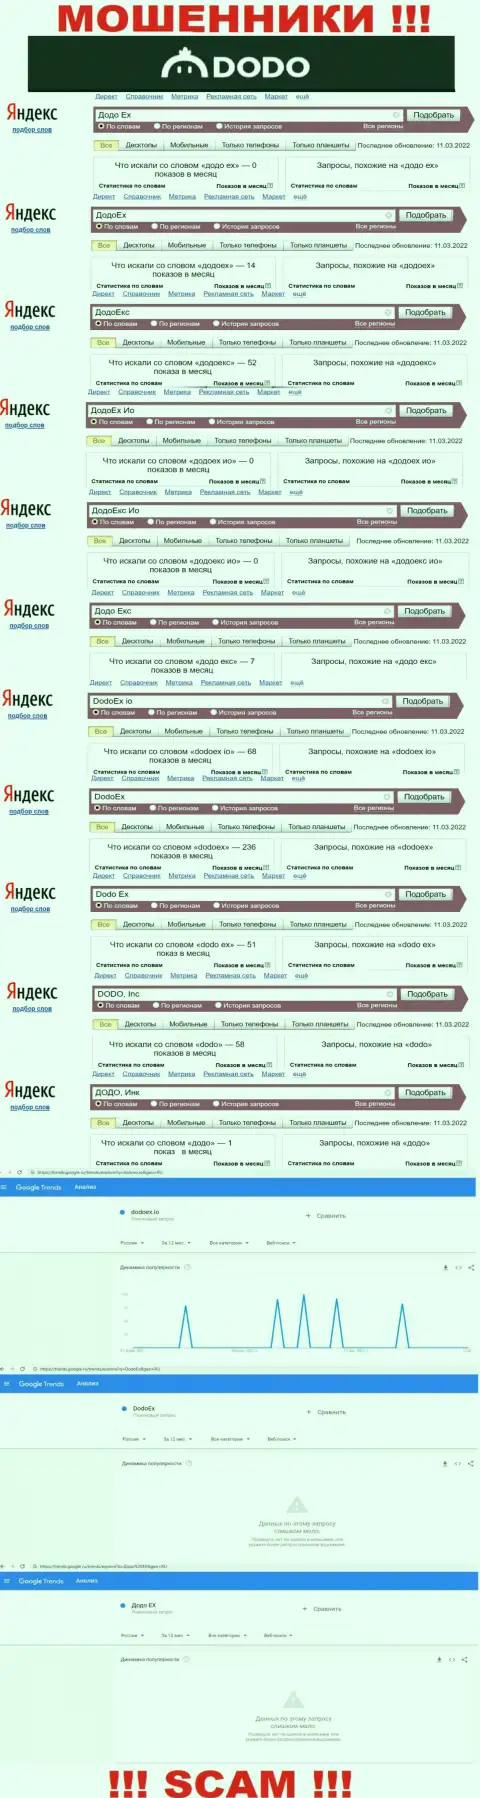 Статистические показатели online-запросов по обманщикам DodoEx io в поисковиках сети интернет